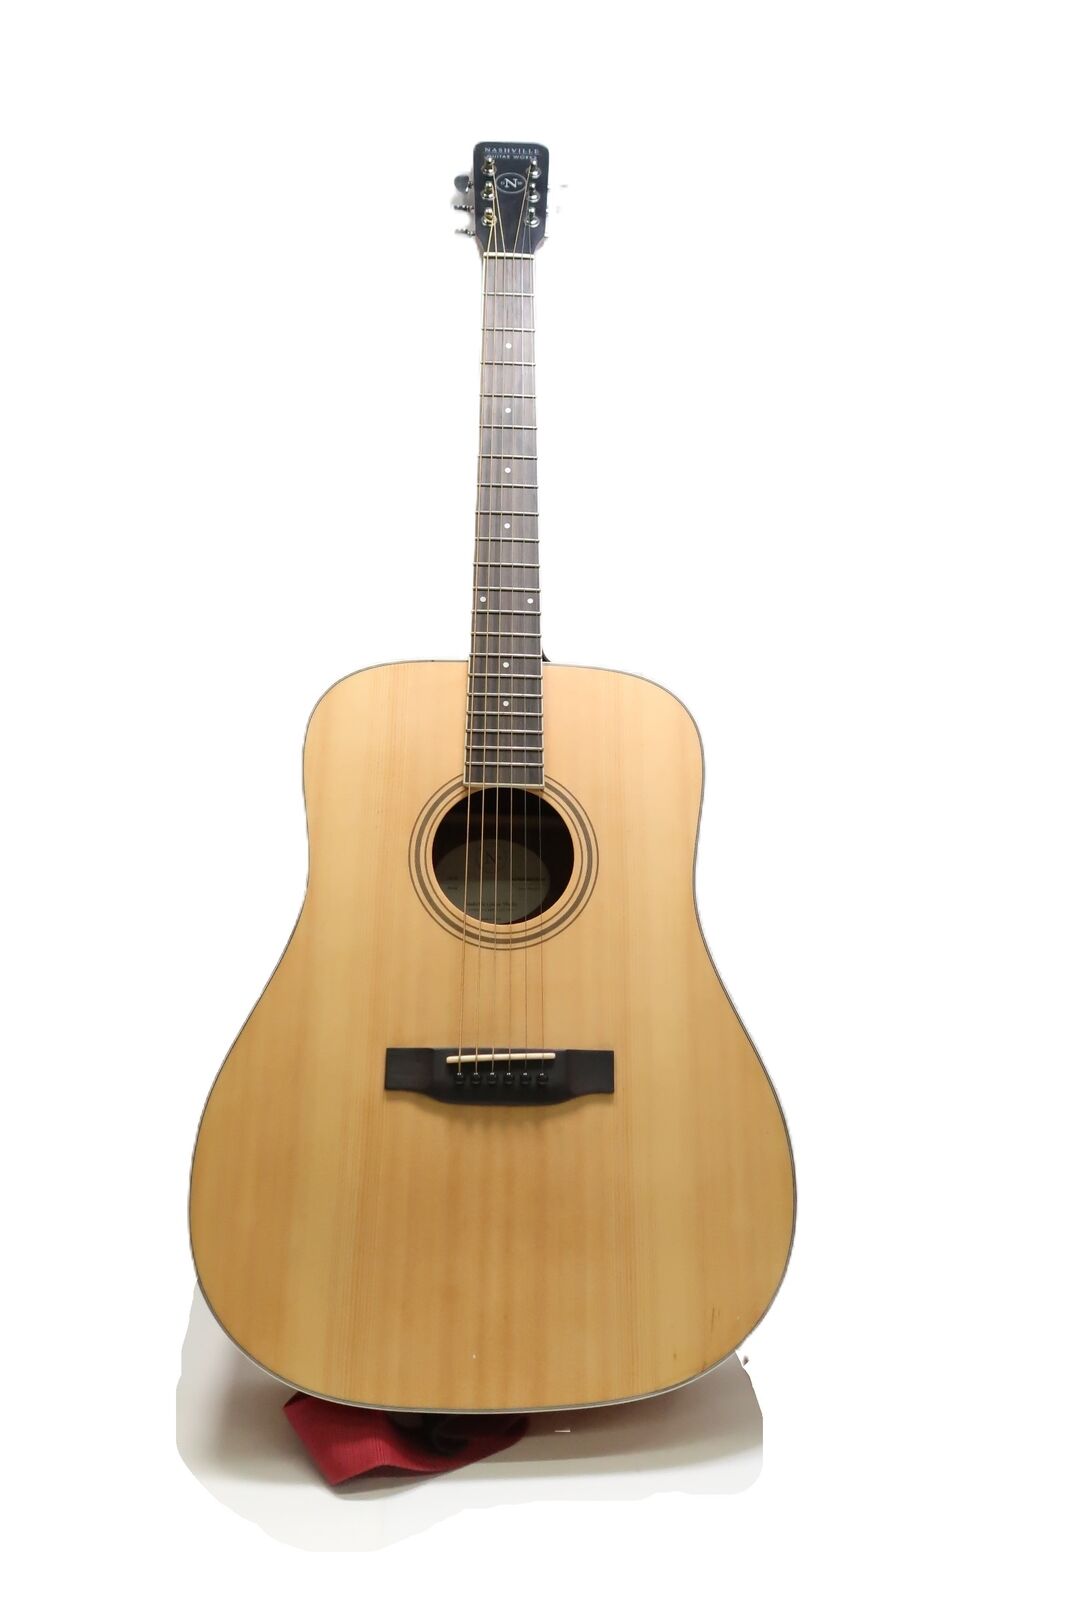 Nashville Guitar Works D10 Acoustic Guitar 9788 1